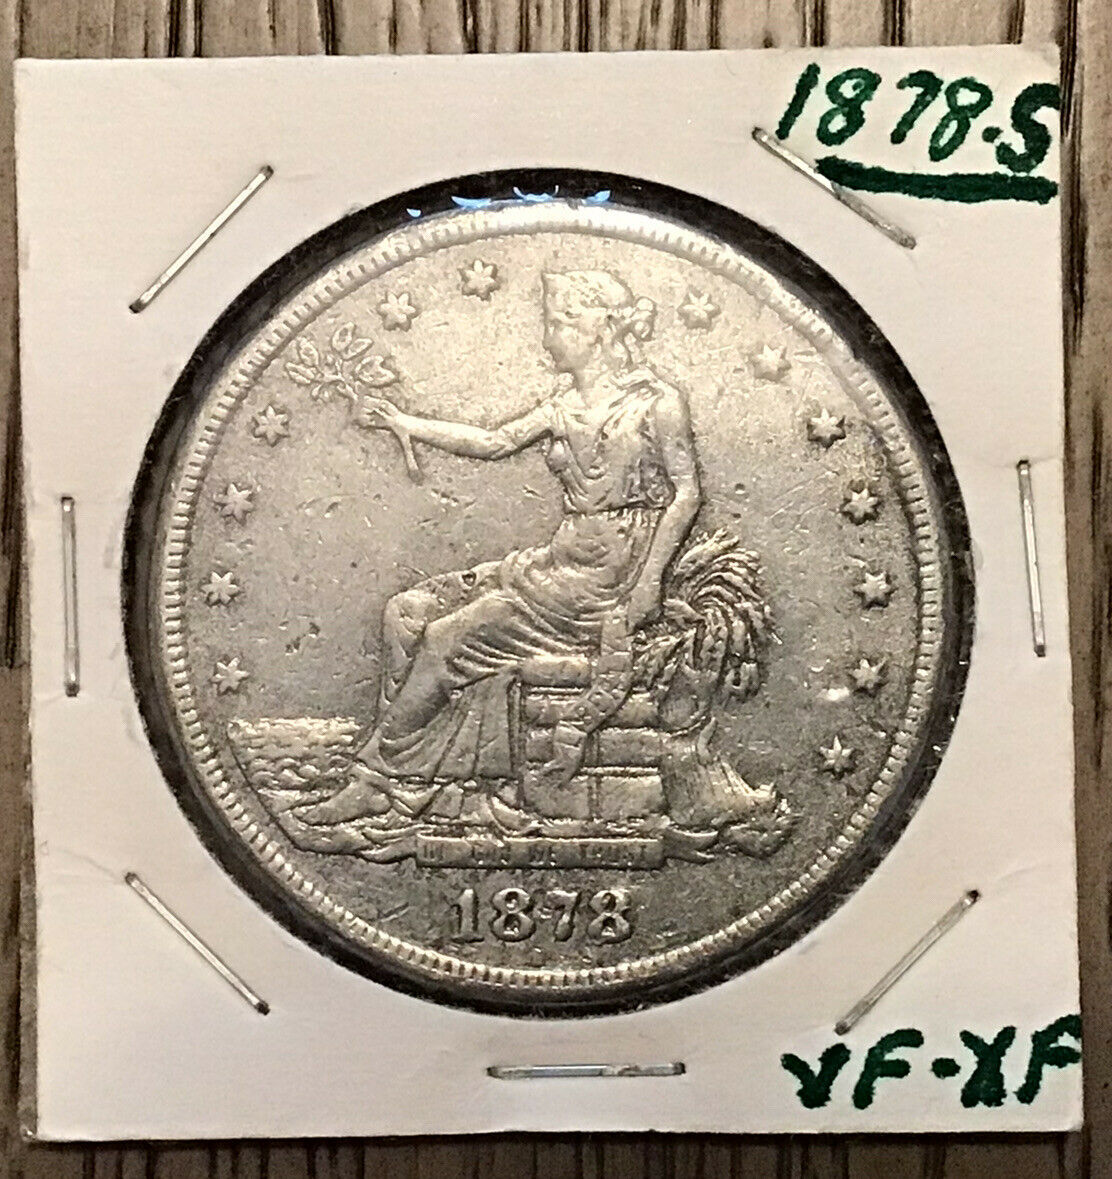 1878-s Silver Trade Dollar Circulated